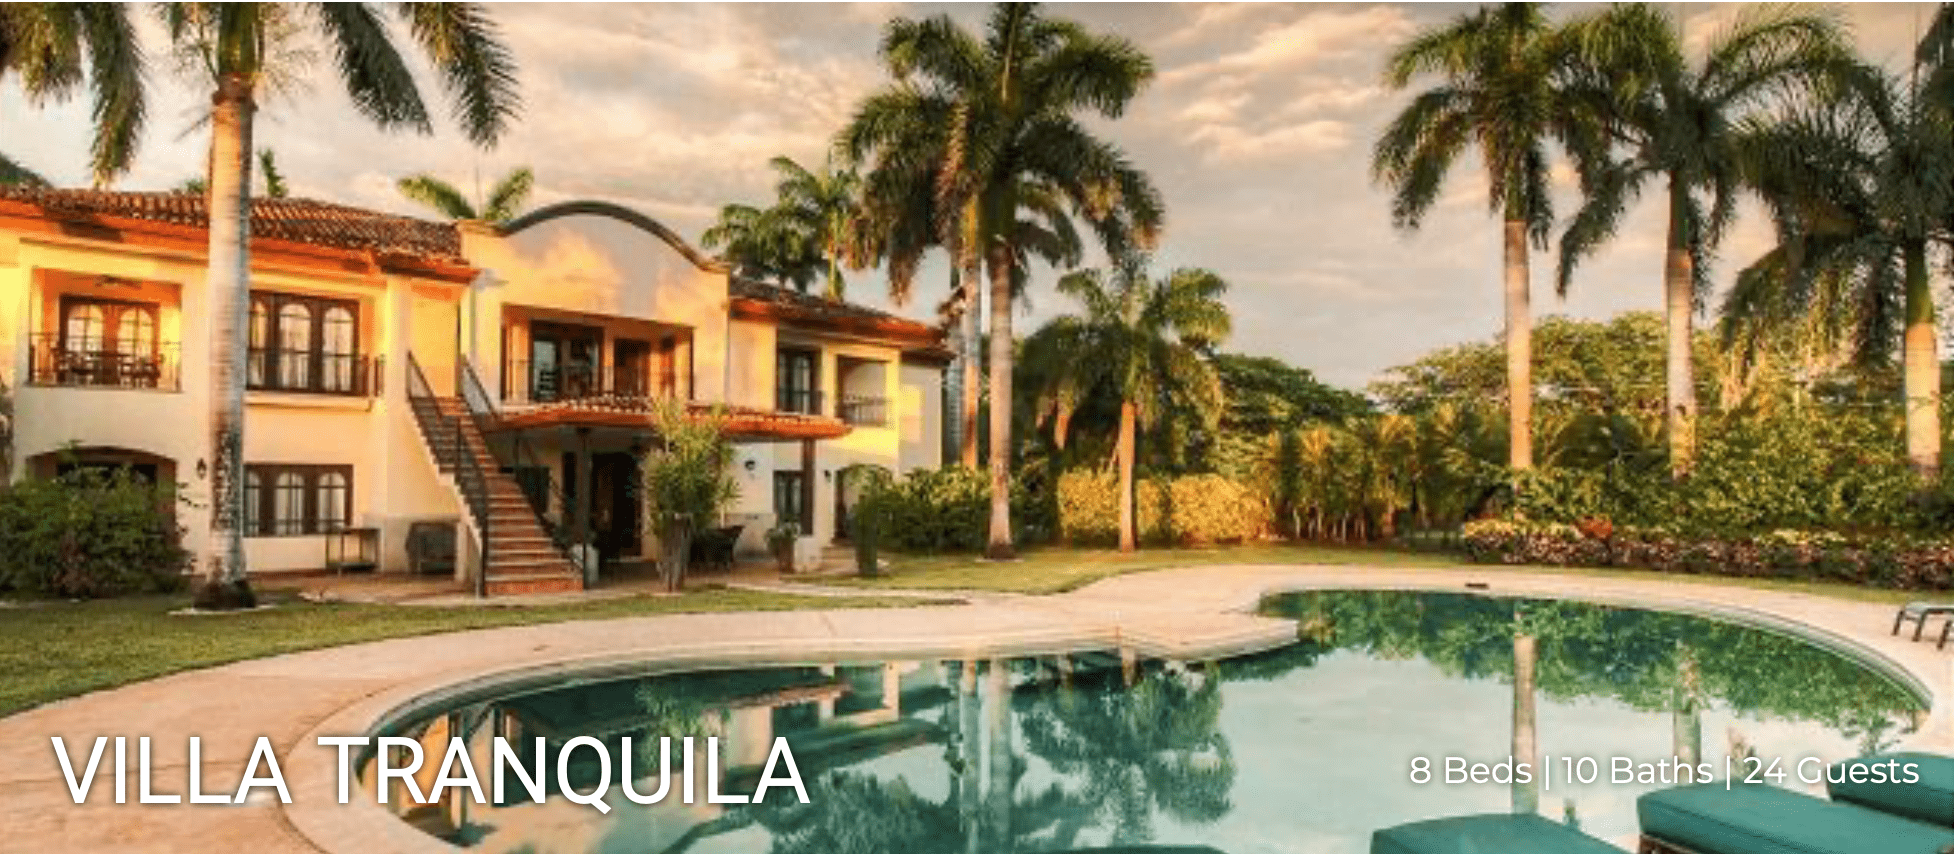 Villa Tranquila venue for Costa Rica health retreat